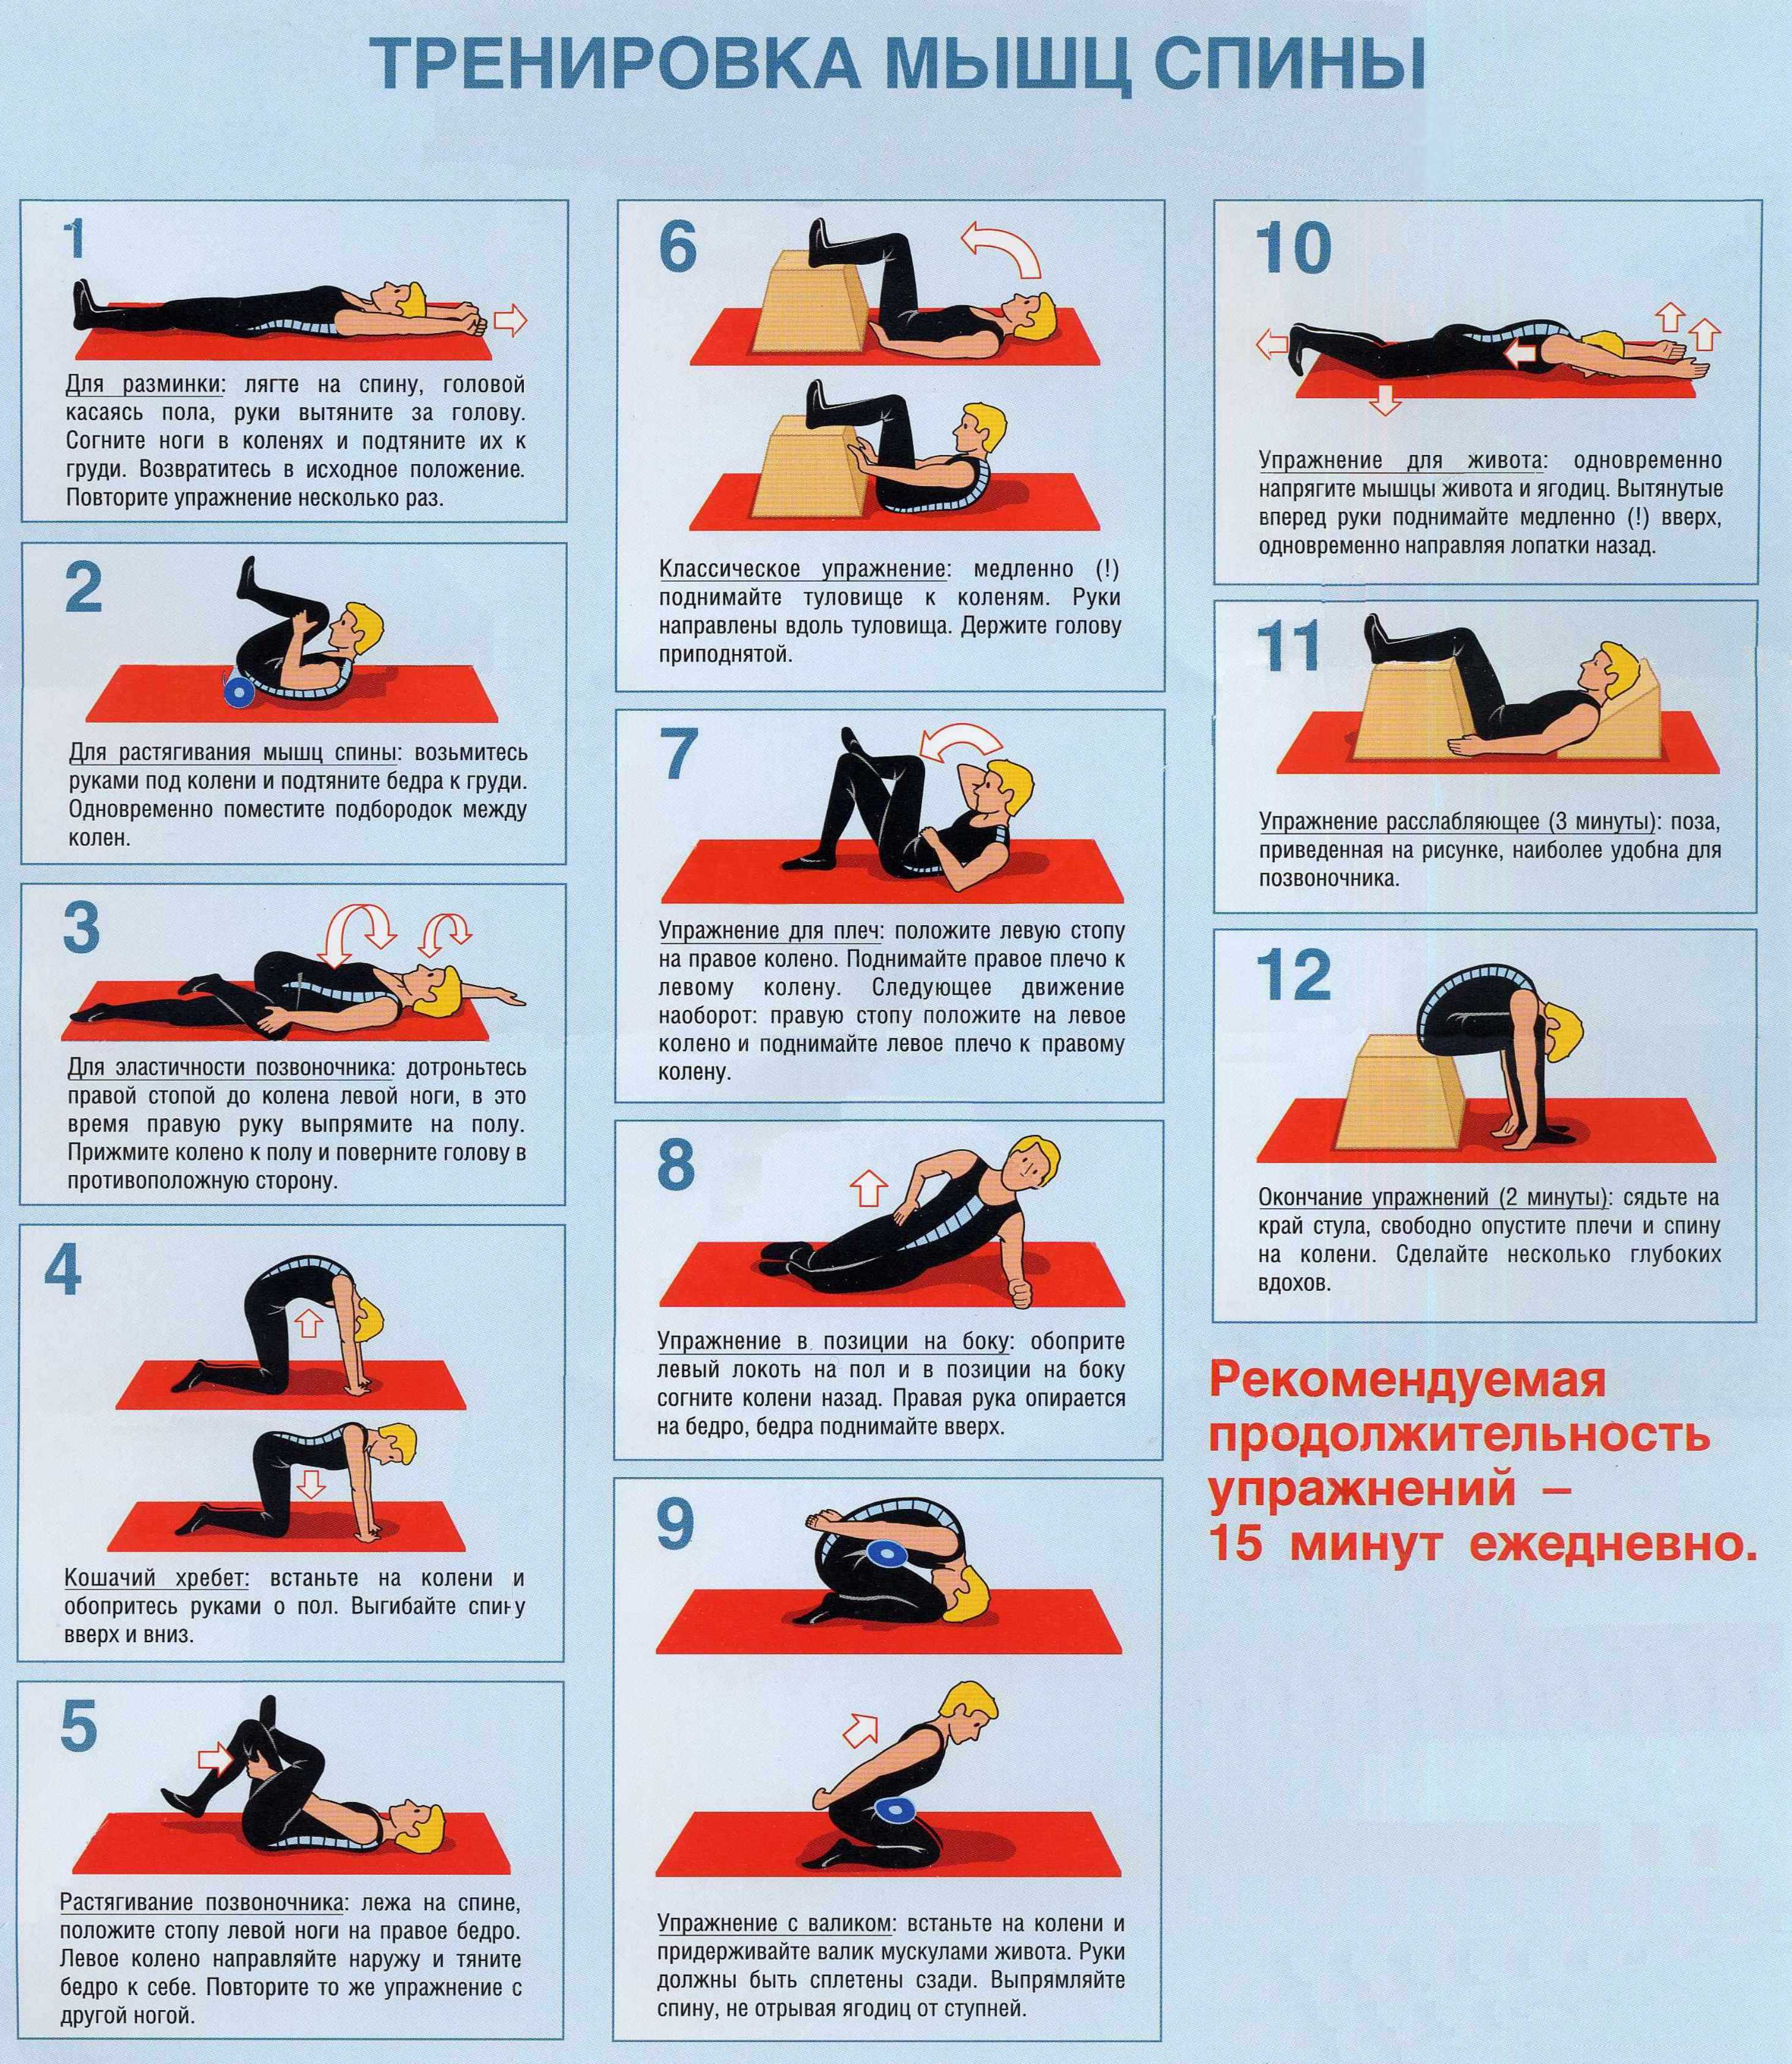 Упражнения при болях в пояснице: лечебная гимнастика